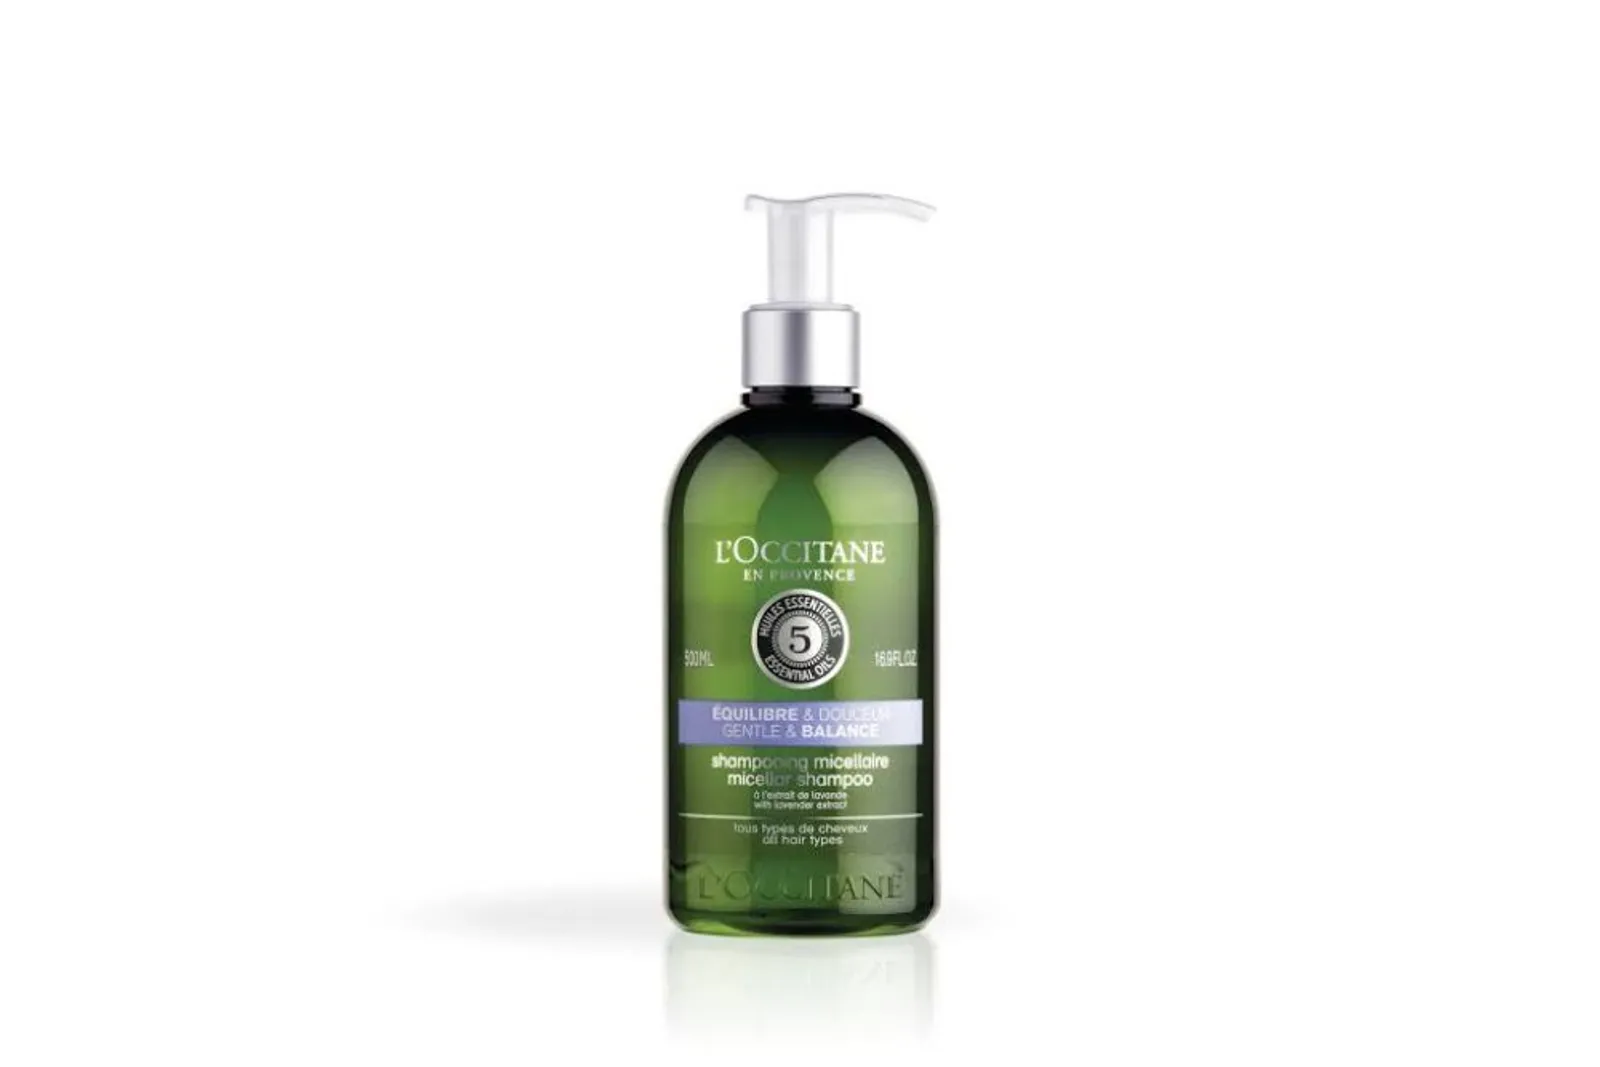 6 Rekomendasi Micellar Shampoo yang Bikin Rambut Jadi Lebih Bersih